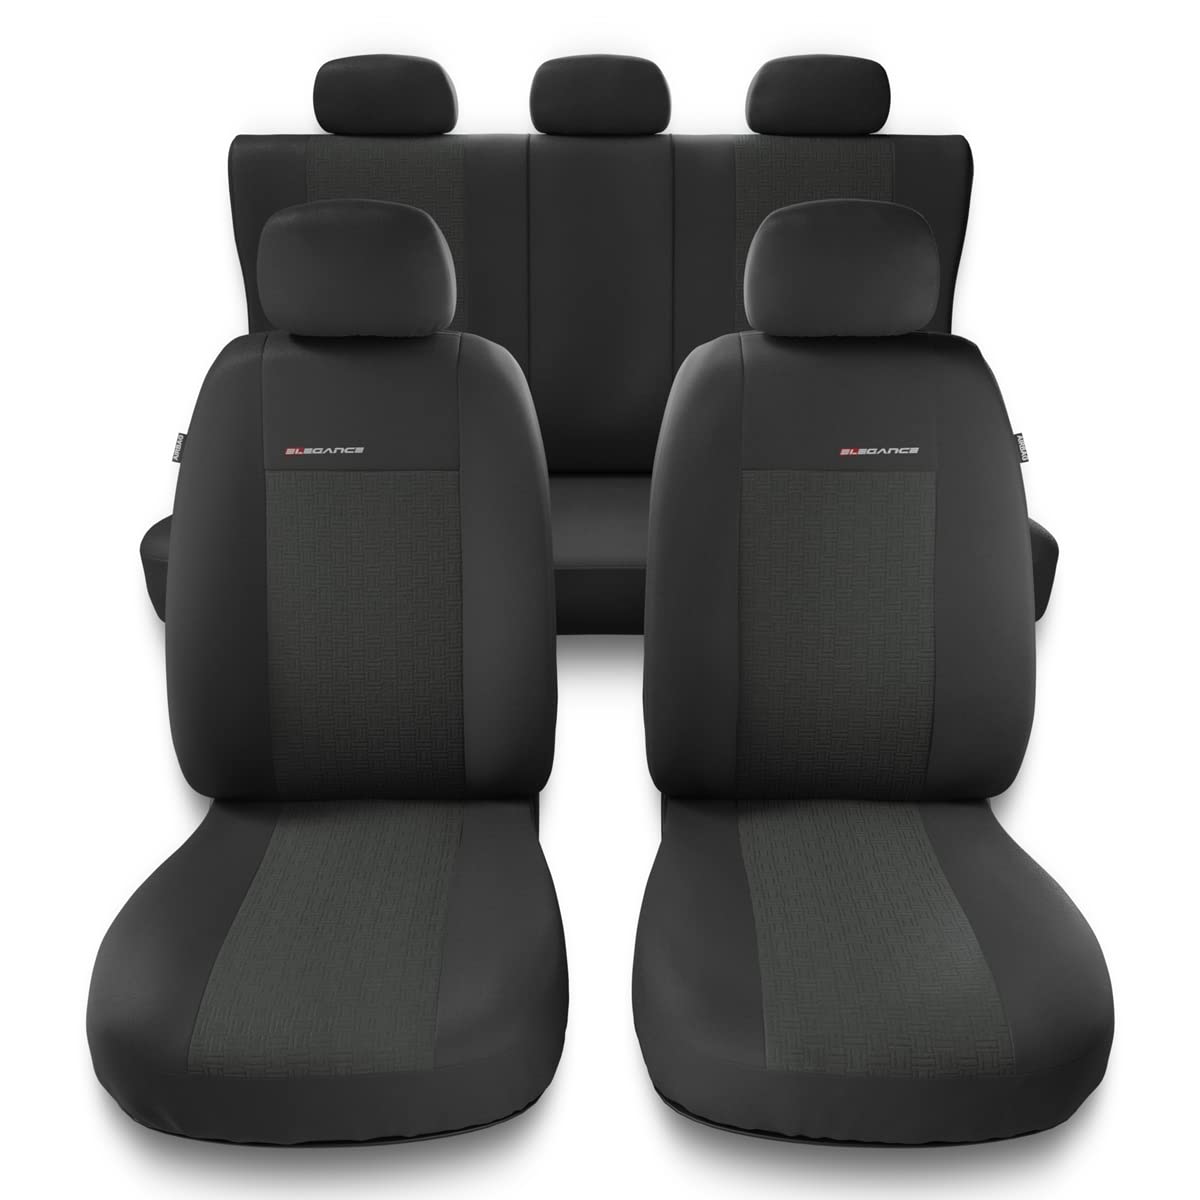 Mossa - Universal Sitzbezüge Auto kompatibel mit Volkswagen Amarok (2010-2019) - Autositzbezüge Schonbezüge für Autositze - UNE-1 von Mossa